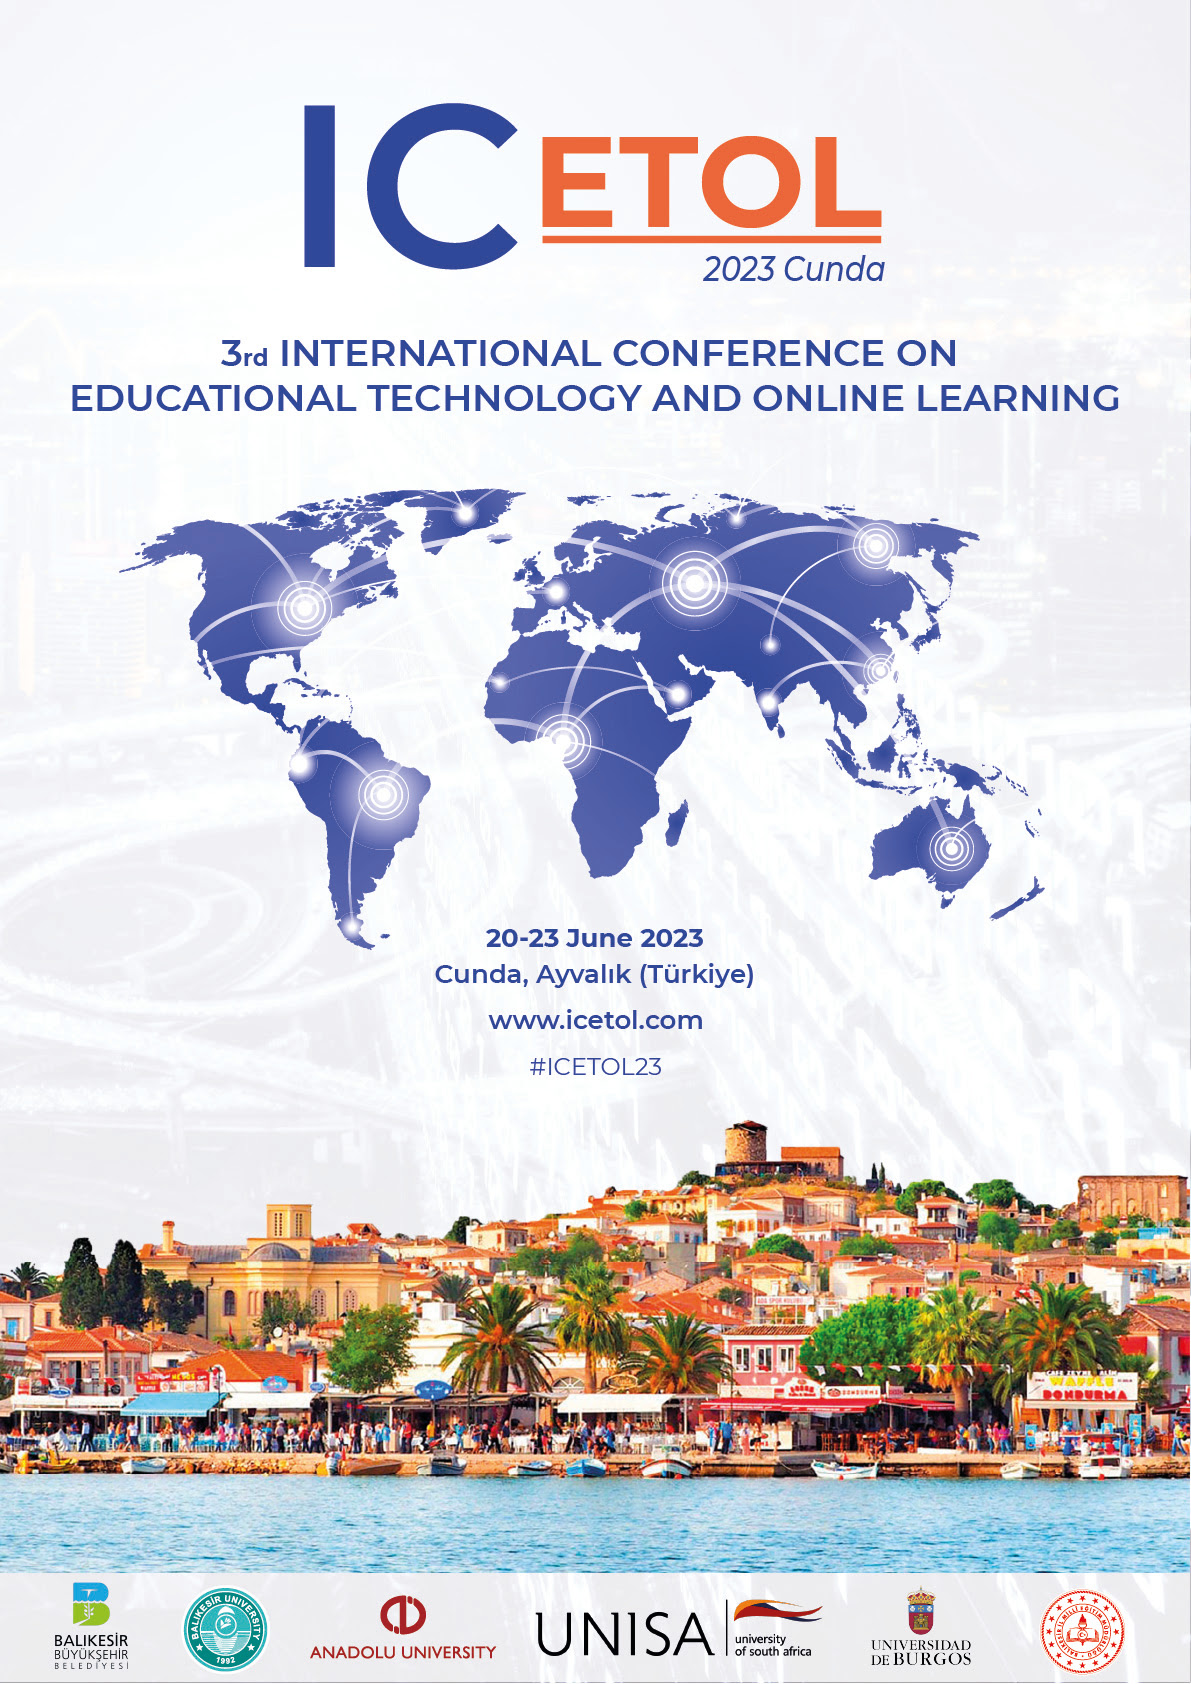 ICETOL: Internationale Konferenz für Bildungstechnologie und Online-Lernen